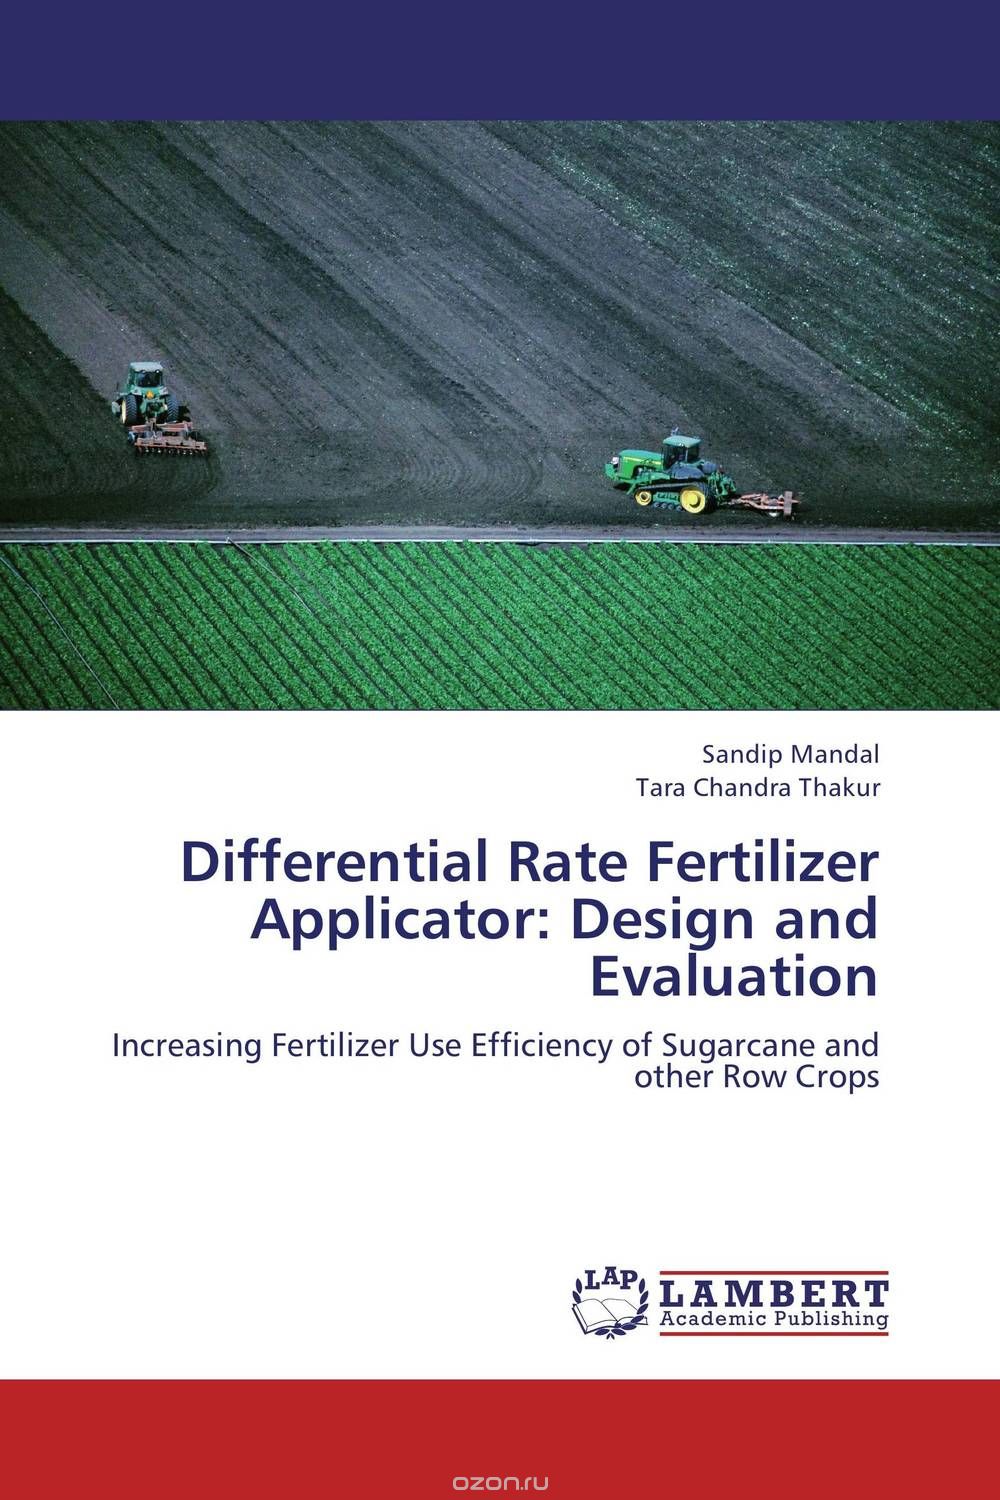 Скачать книгу "Differential Rate Fertilizer Applicator: Design and Evaluation"